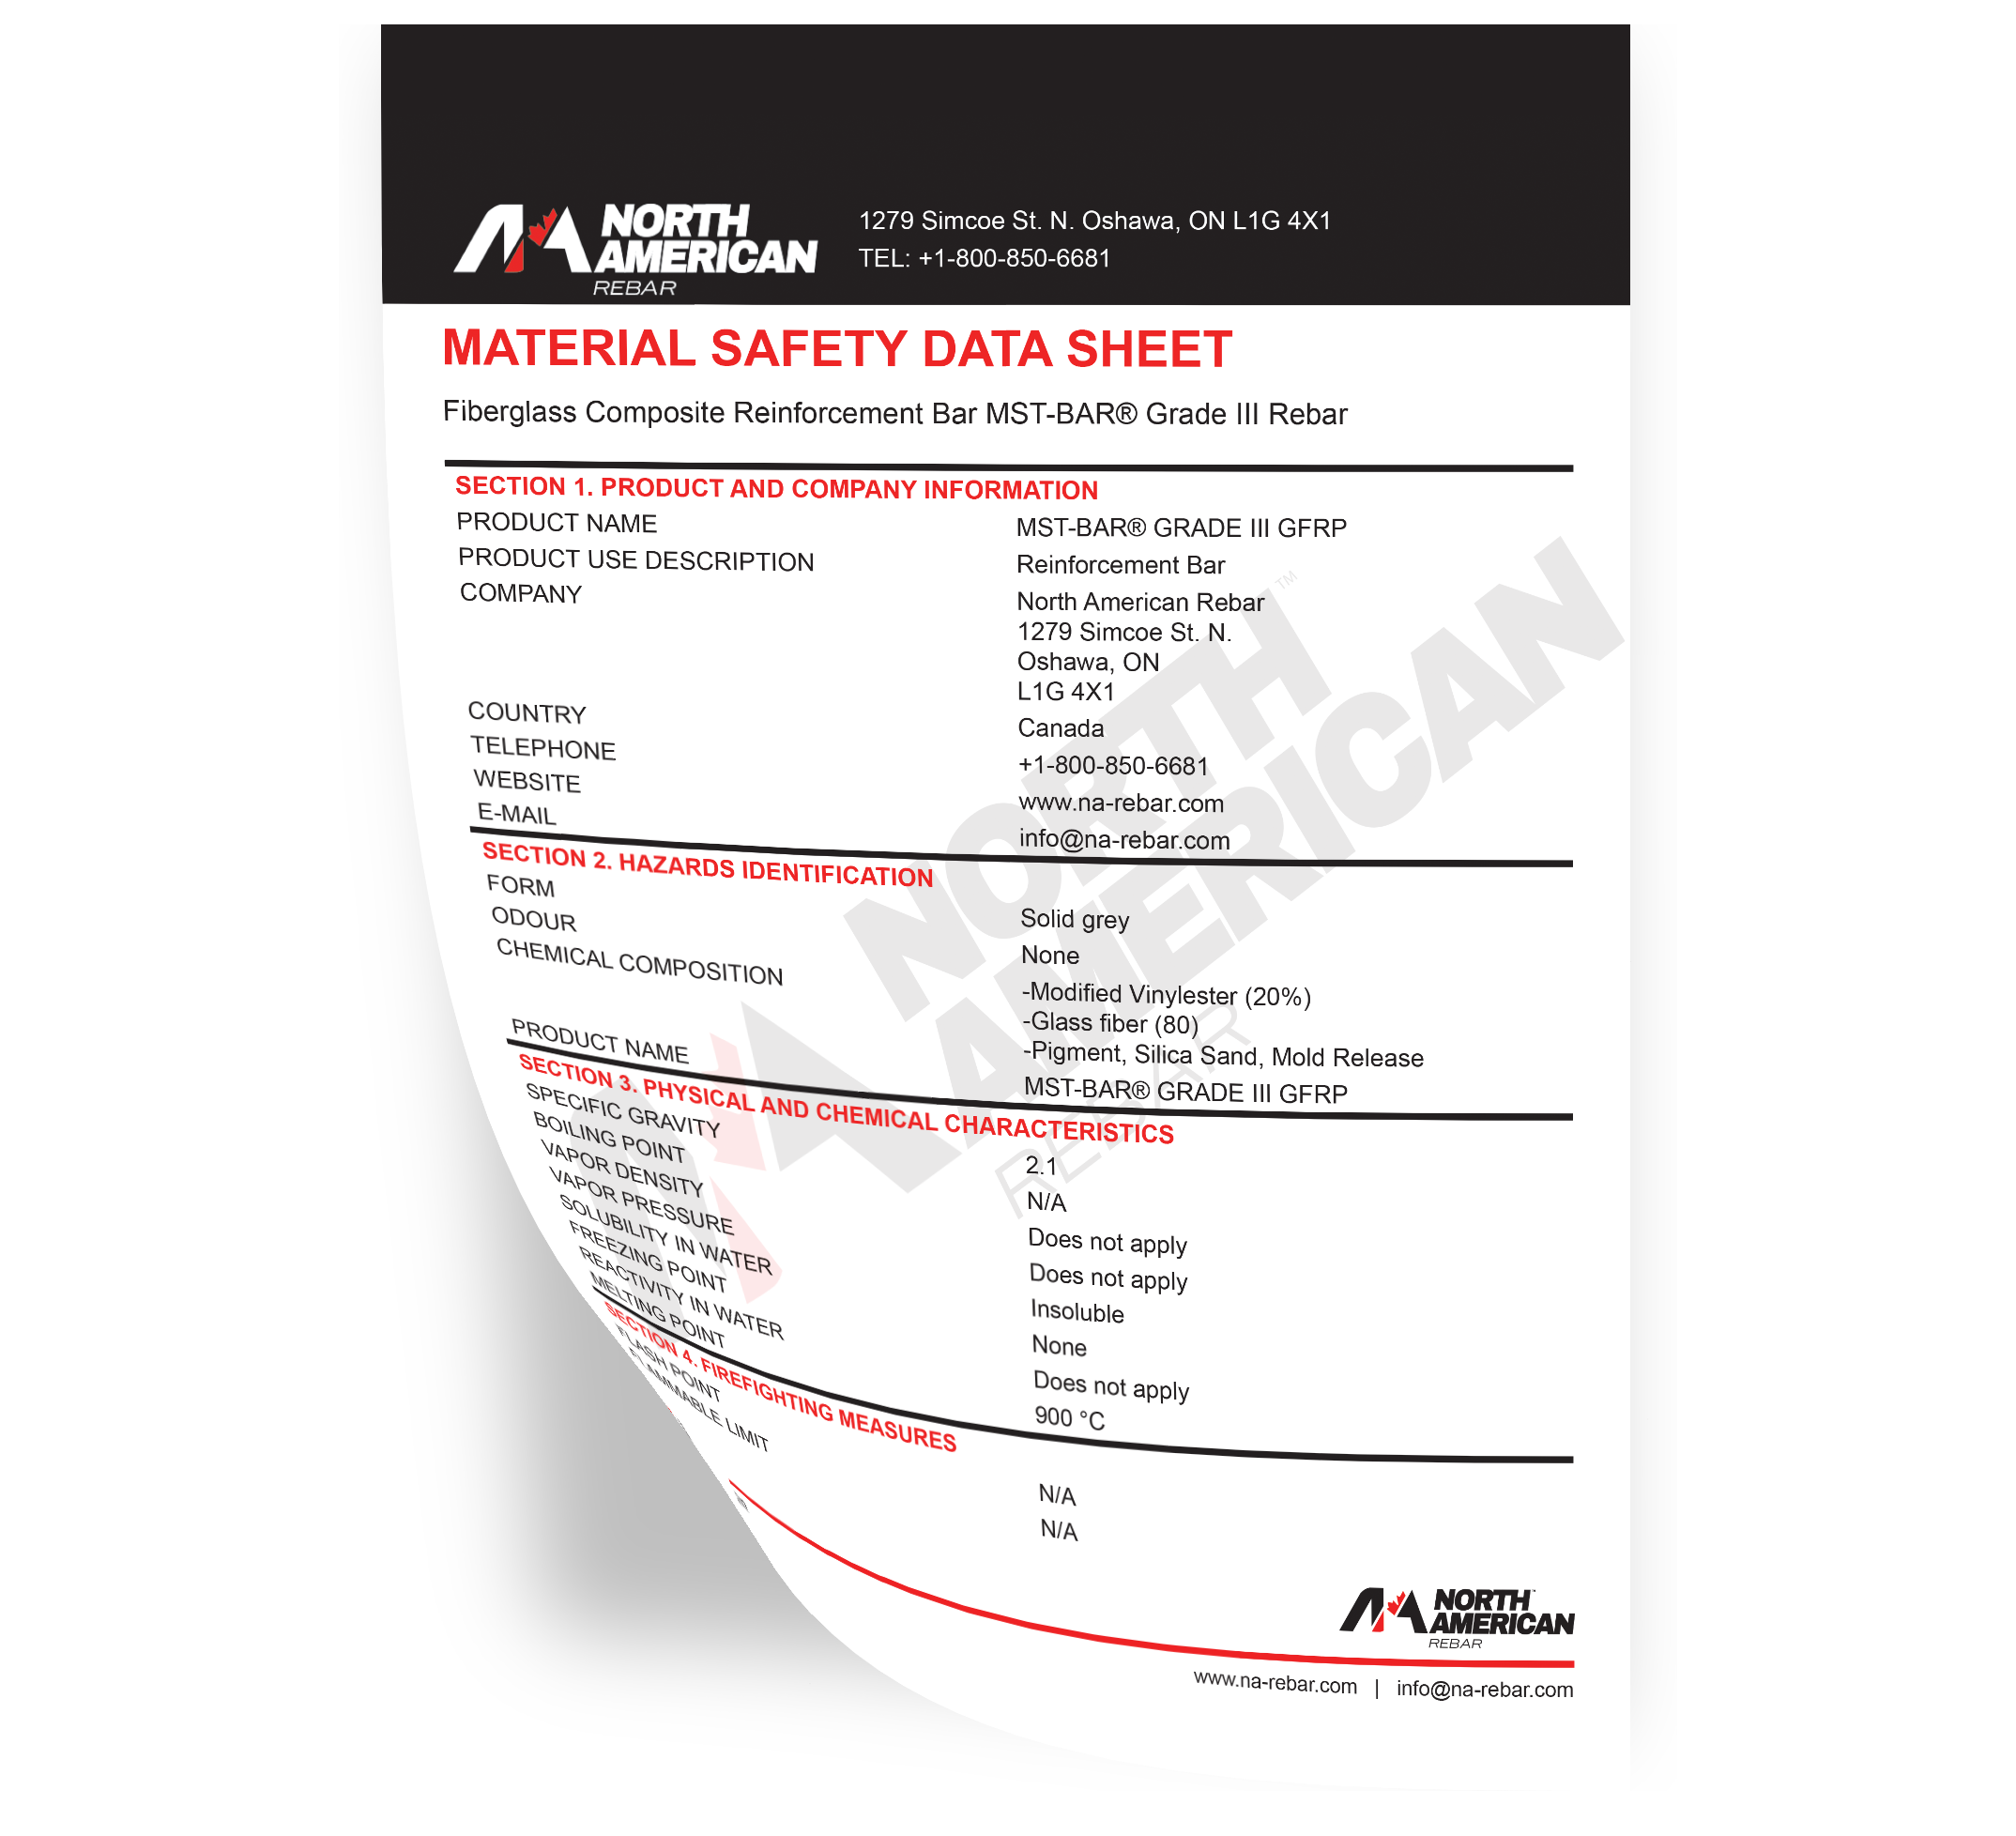 North American Rebar material safety data sheet